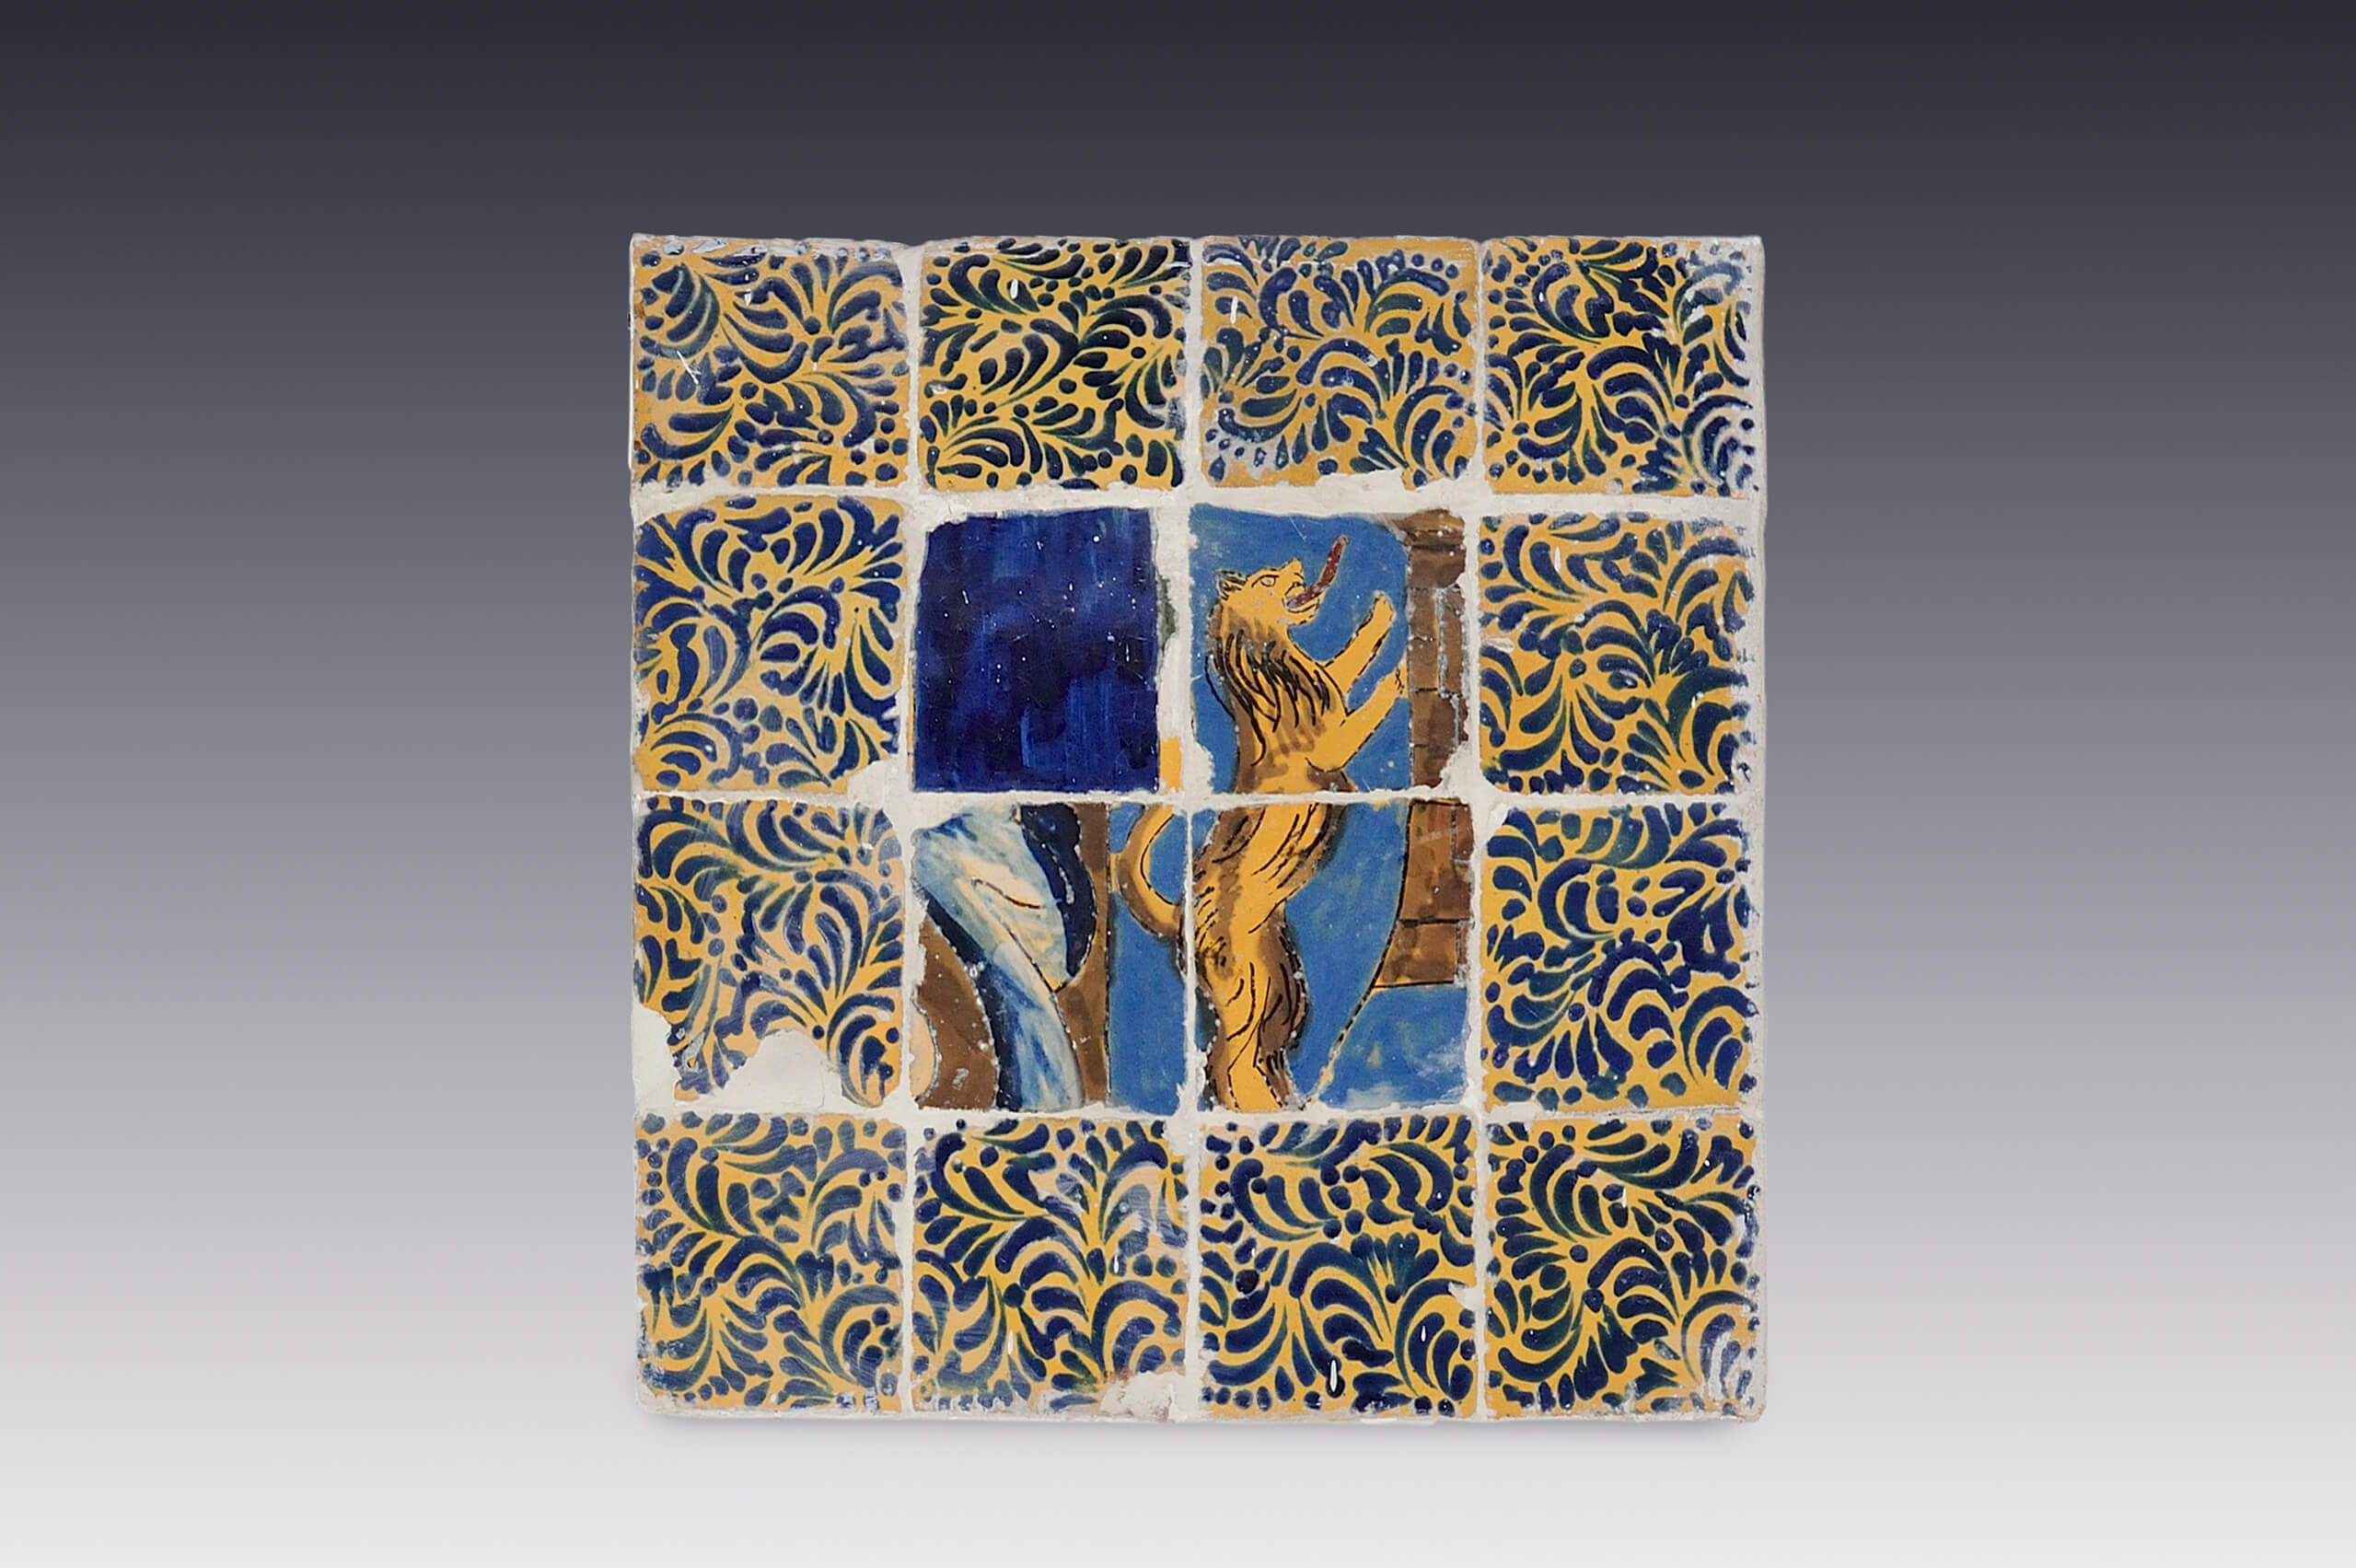 Panel de azulejos con león rampante | Salas de Arte Virreinal y Siglo XIX | Museo Amparo, Puebla